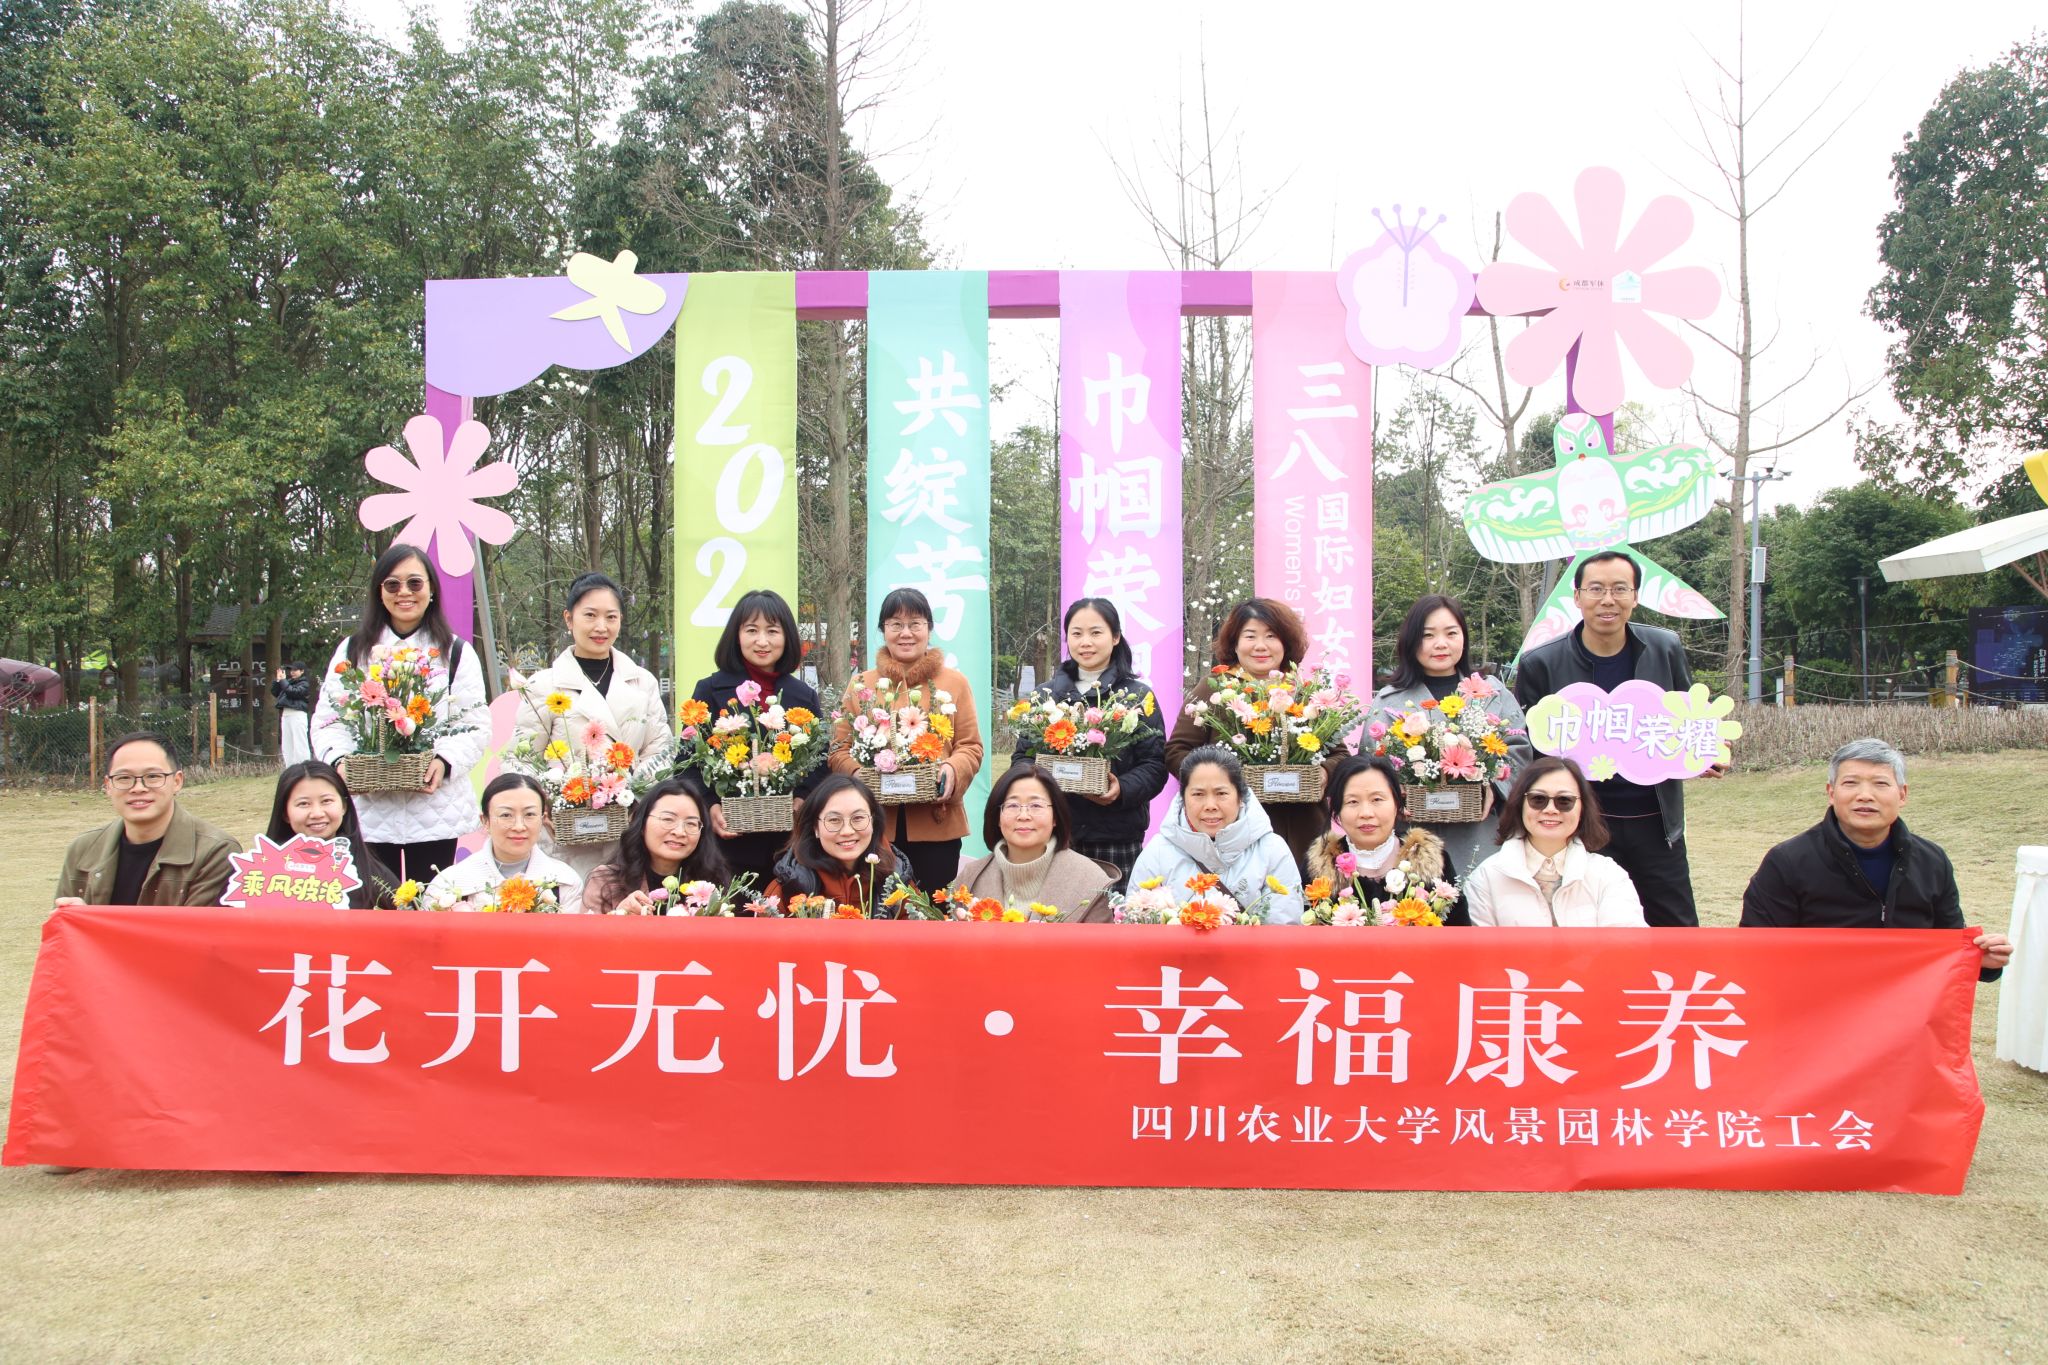 金沙游戏工会与成都市军休中心 联合开展“巾帼荣耀·共绽芳华” 妇女节主题活动